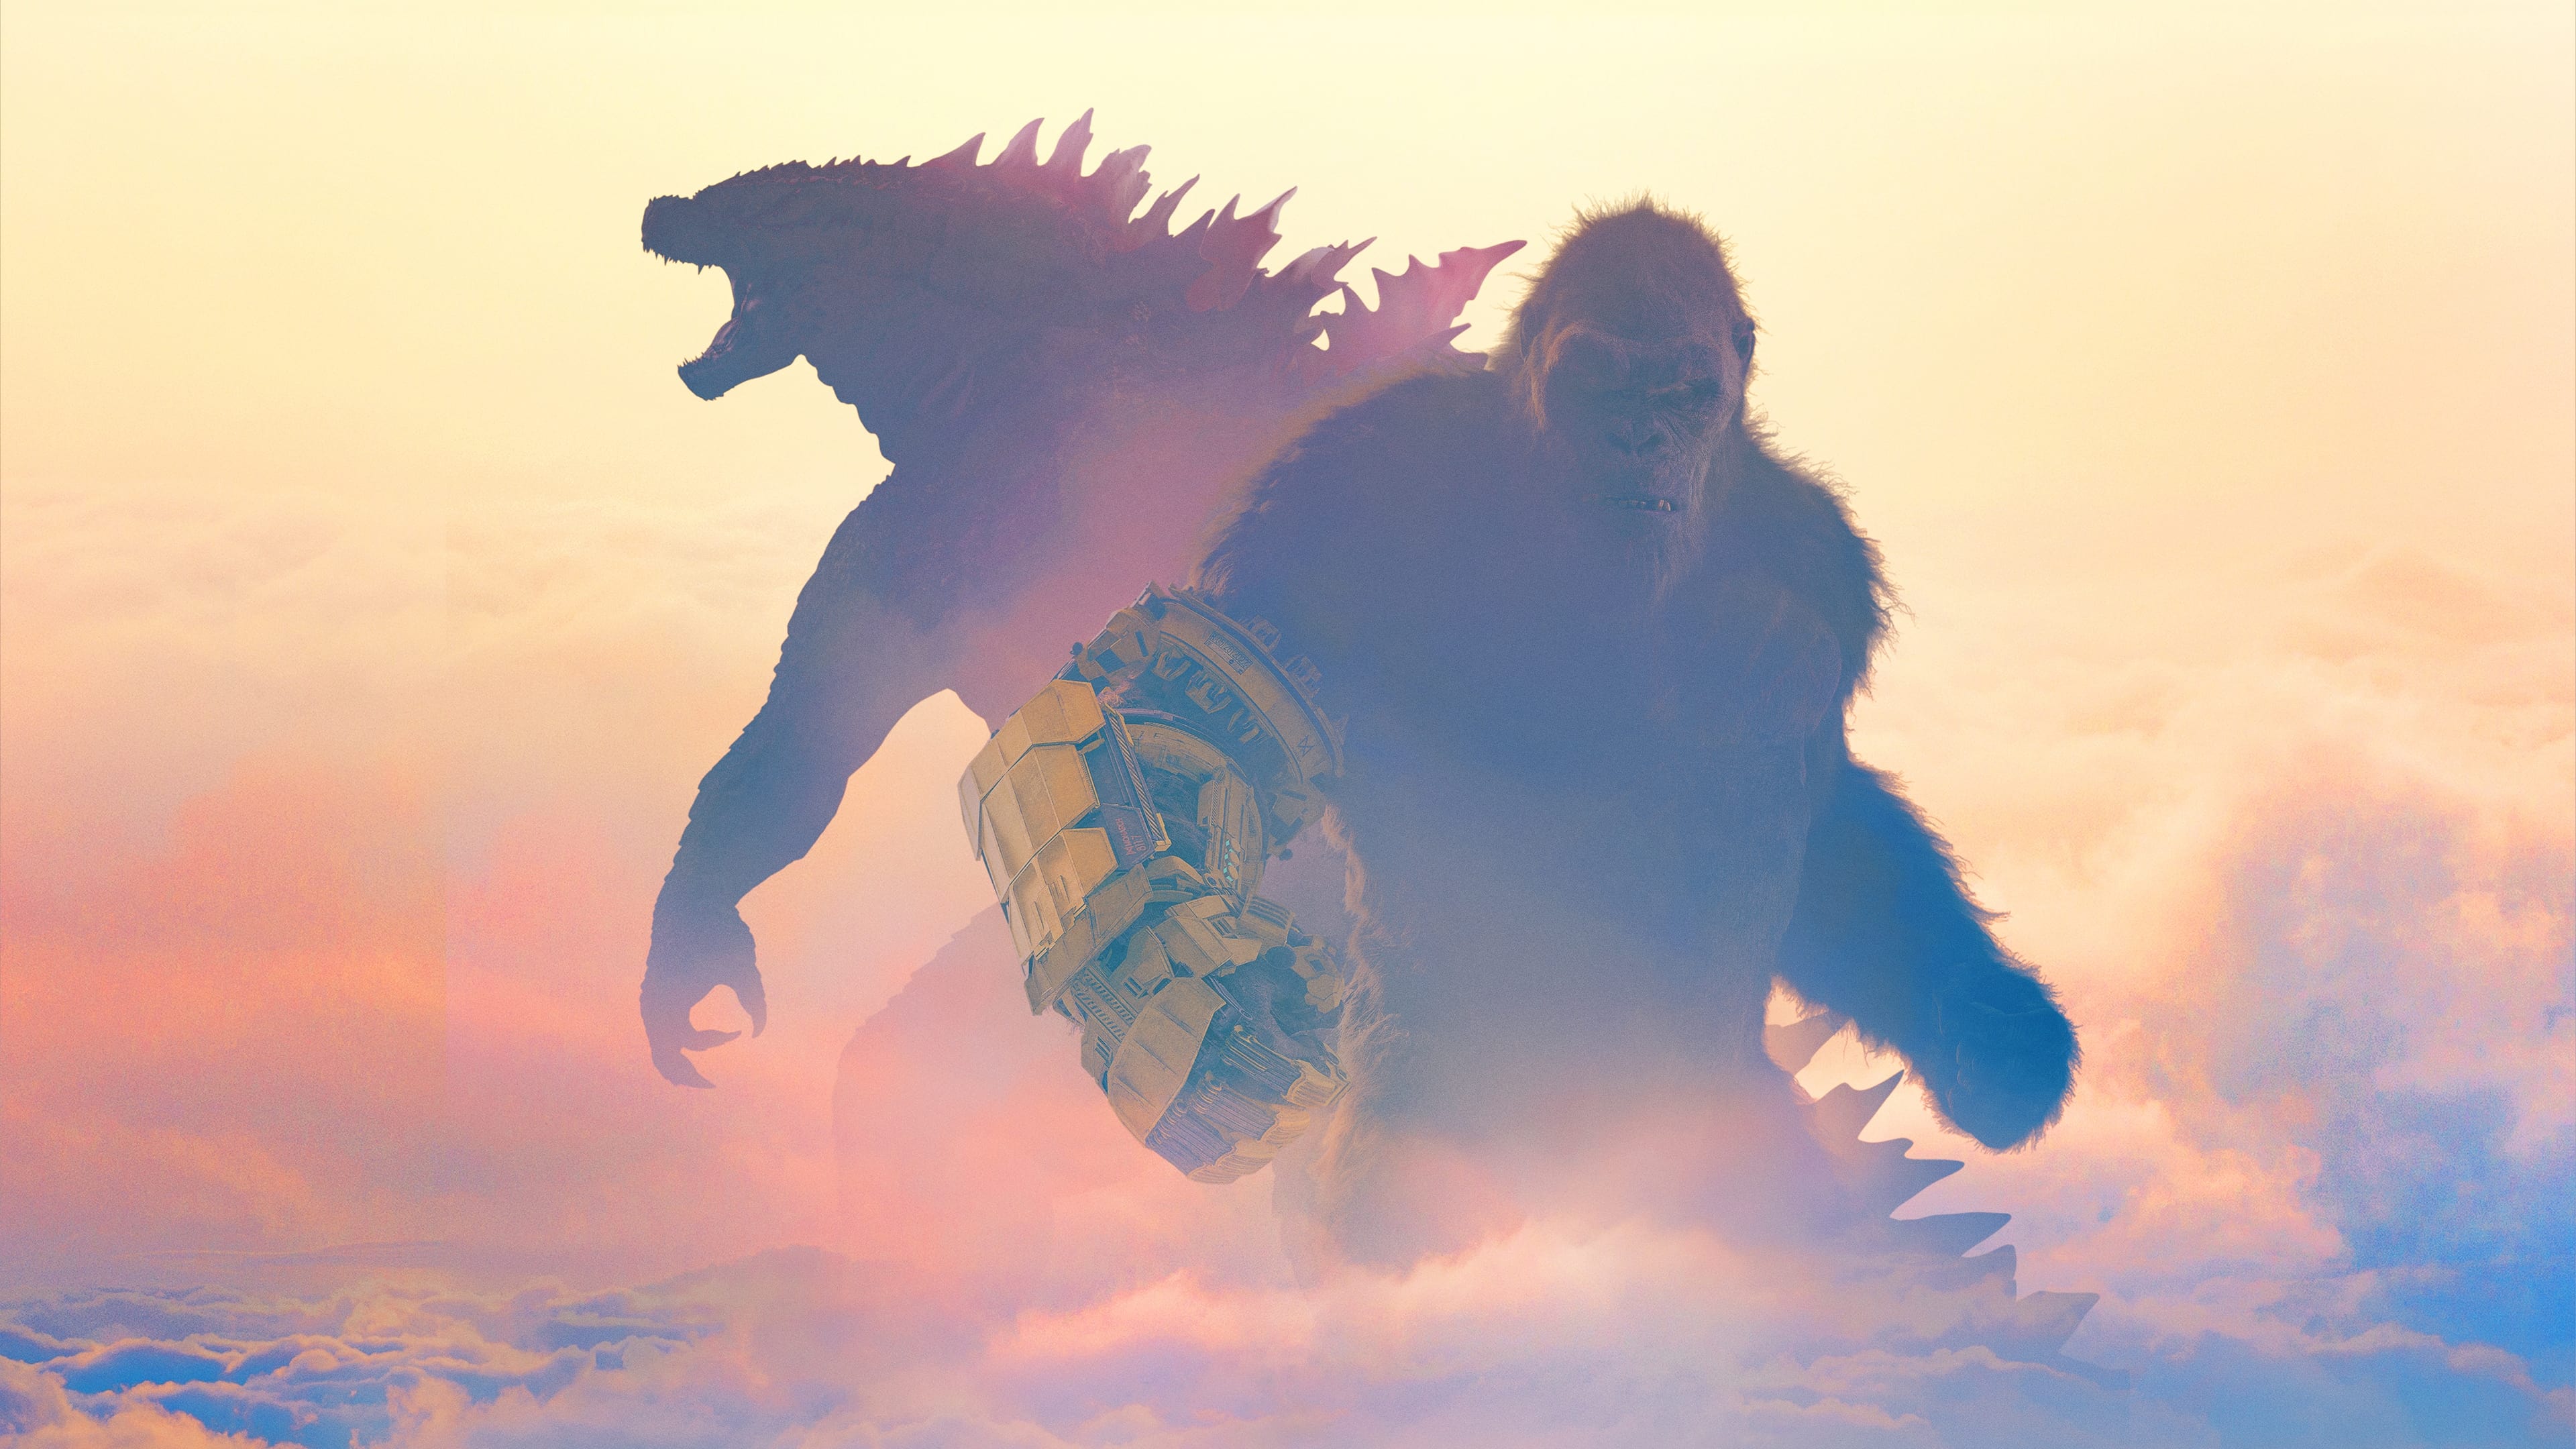 Godzilla i Kong: Nowe imperium (2024)